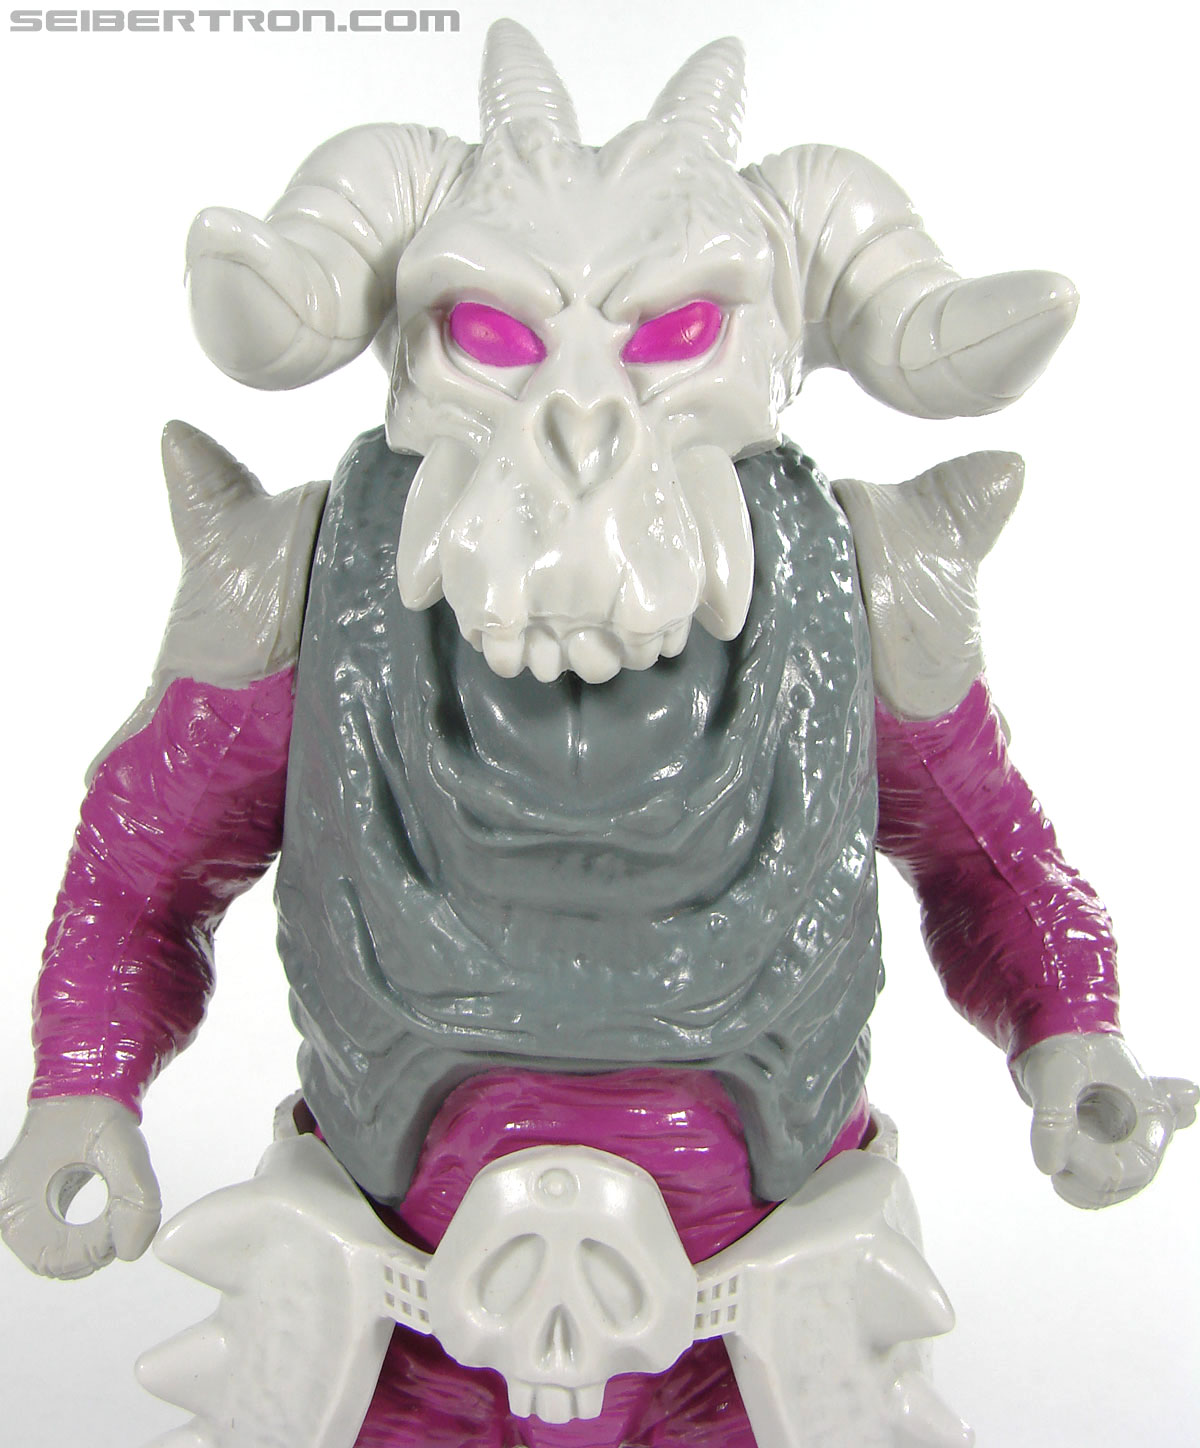 Transformers Super God Masterforce Skullgrin (Dauros) (Image #87 of 196)